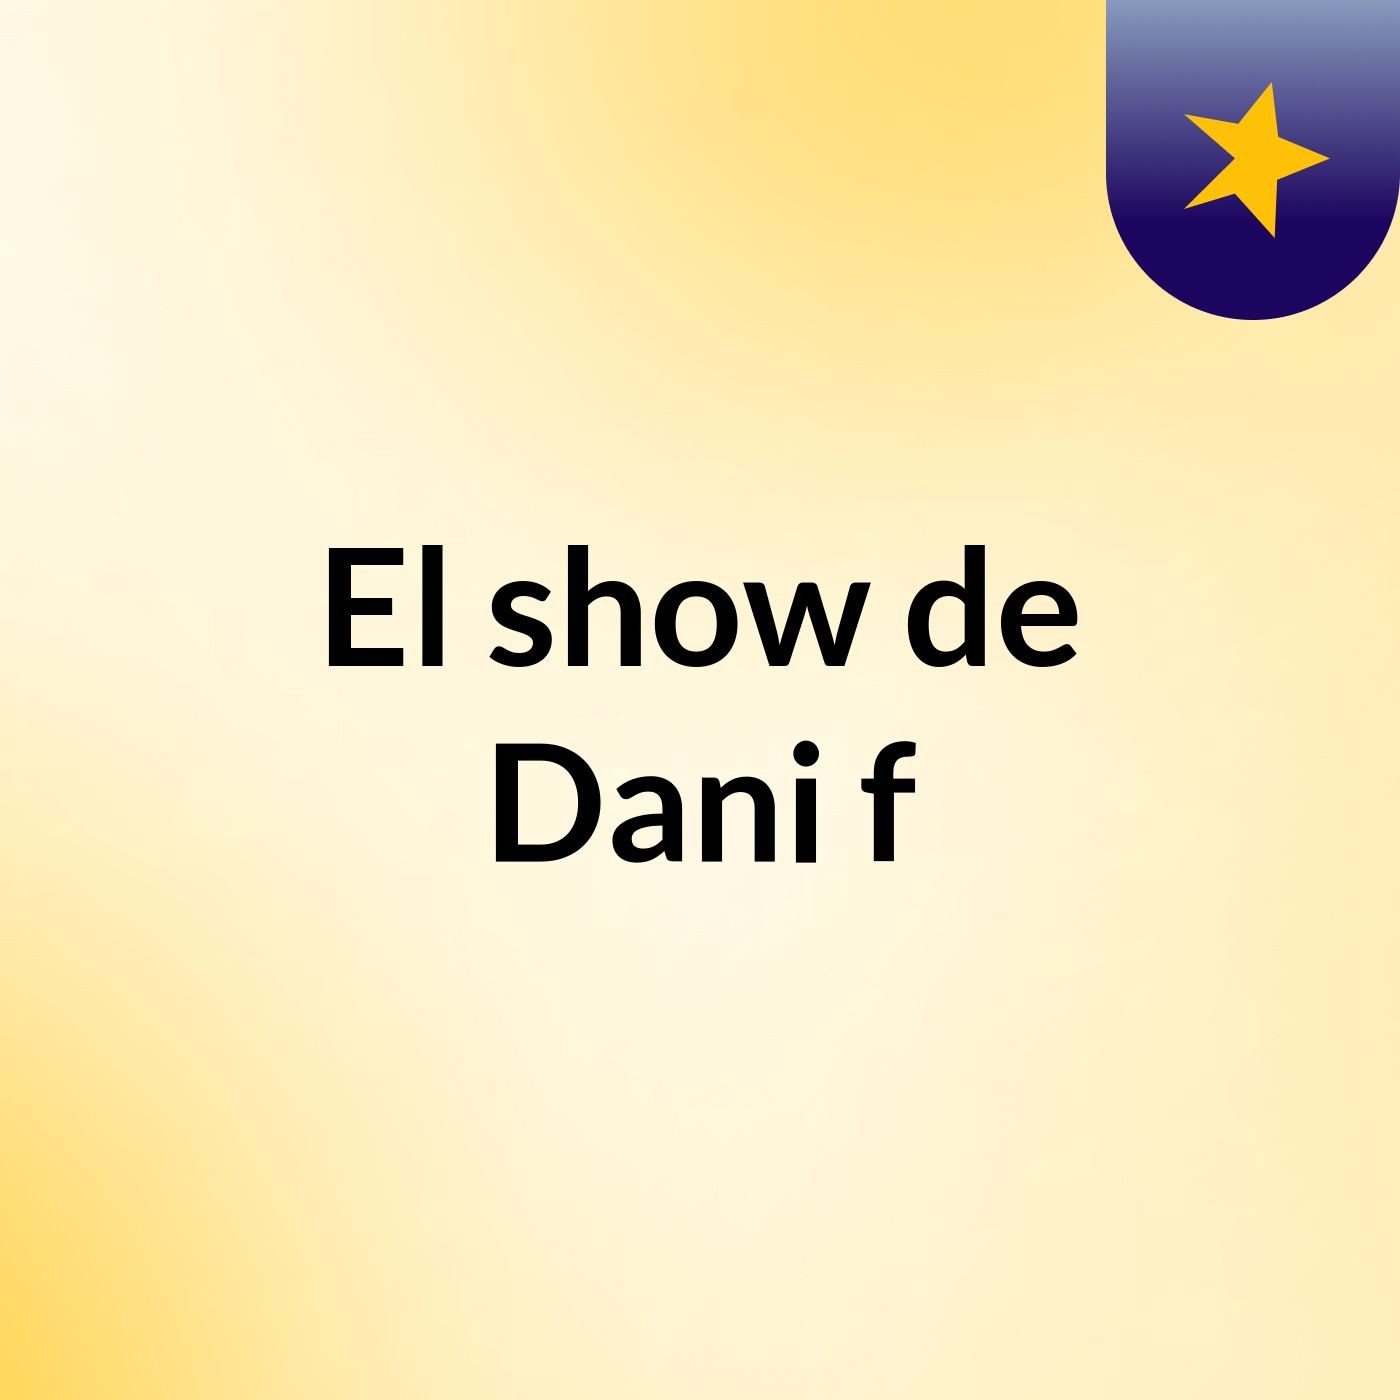 El show de Dani f